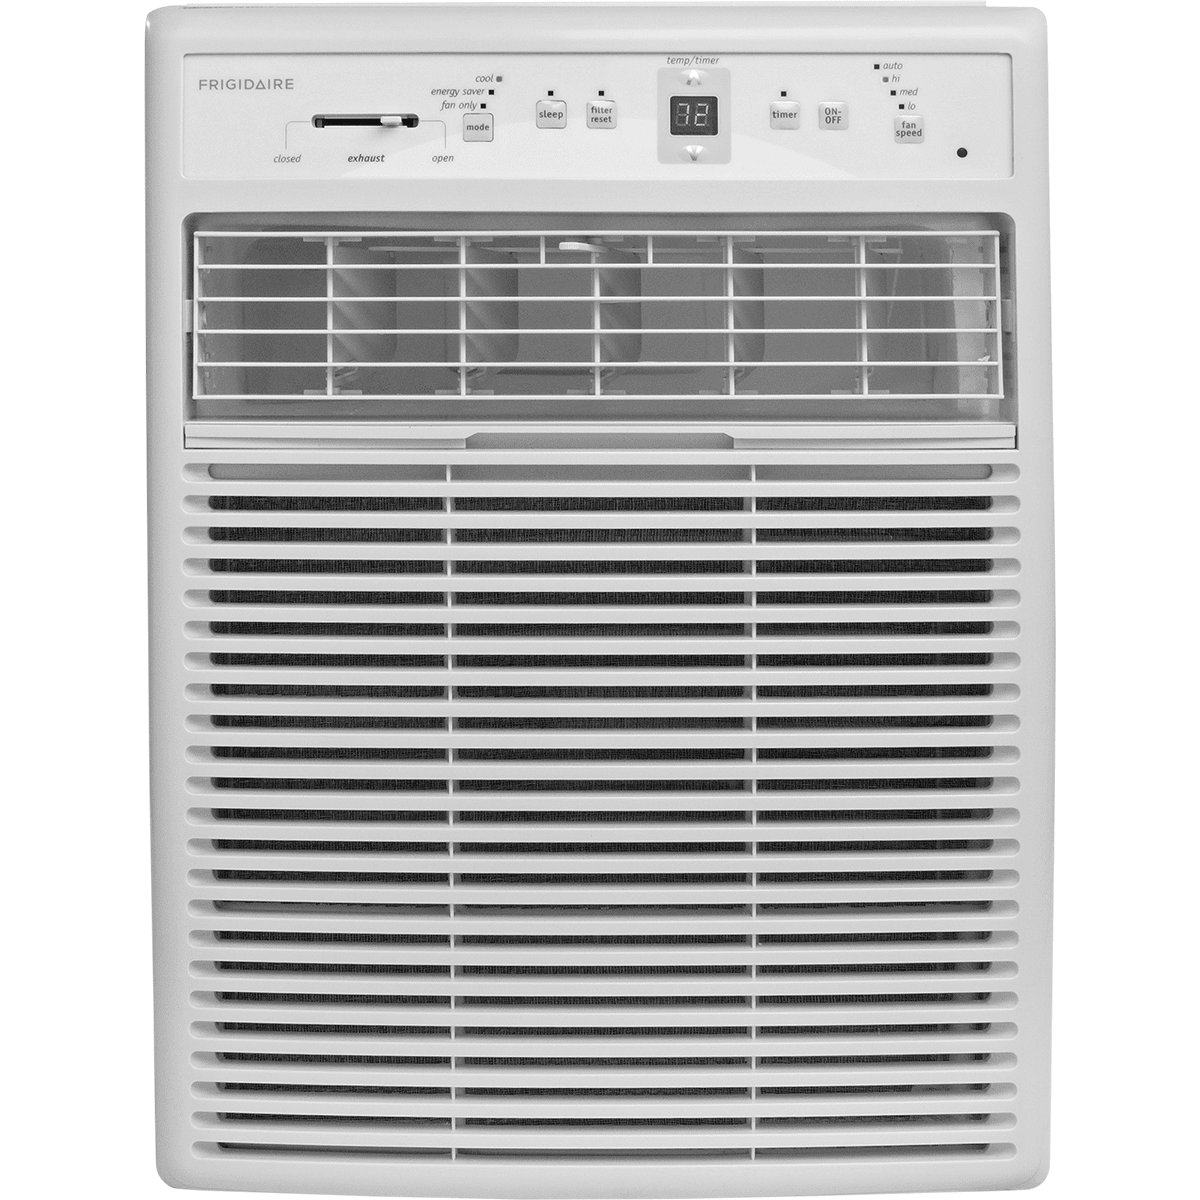 Frigidaire Ffrs0822s1 8,000 Btu Casement Window Air Conditioner